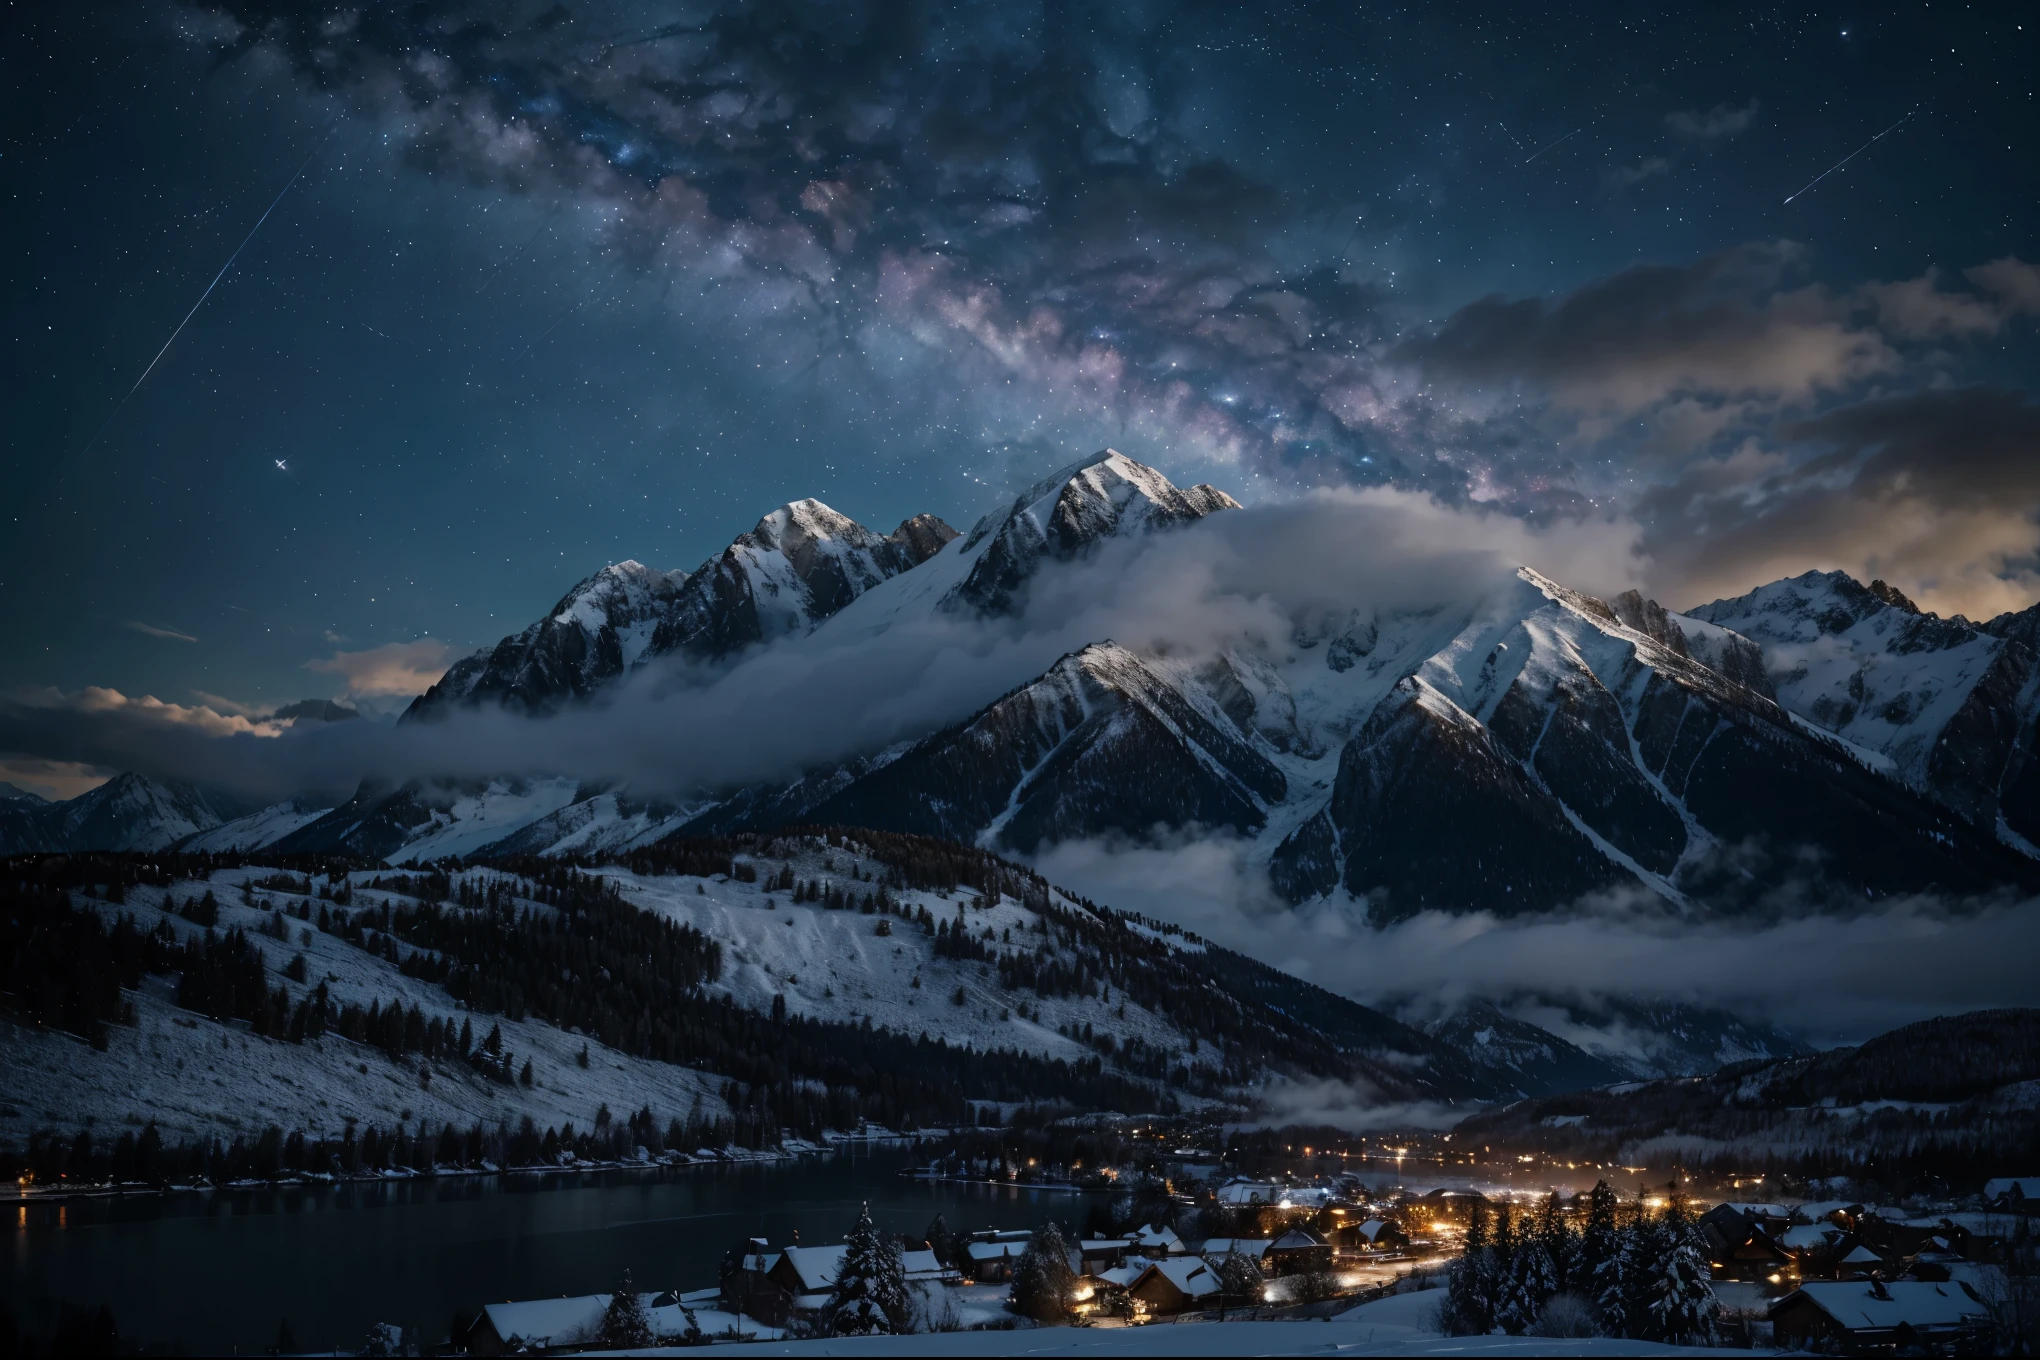 Фон, много высоких гор, Много облаков, зимнее небо, видя созвездия, галактика, Млечный Путь, красивая зимняя ночь с обоями маленького города, красивое озеро, высокая детализация, реалистичное 8к Full HD.
